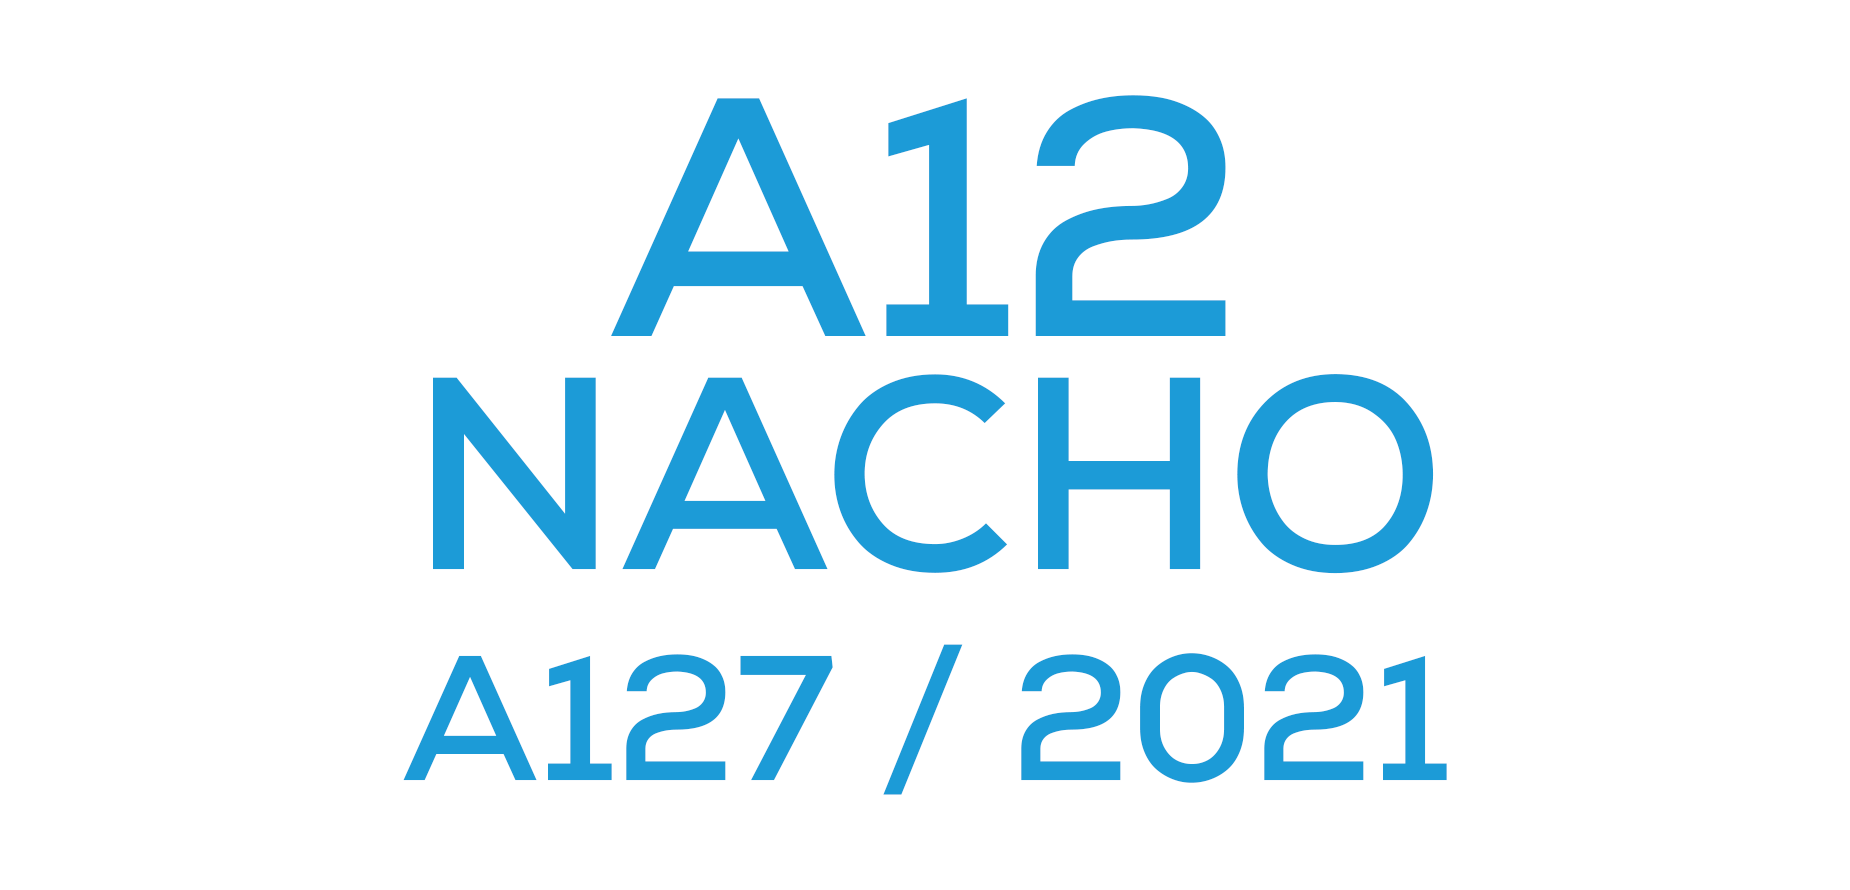 A12 NACHO (A127 / 2021)